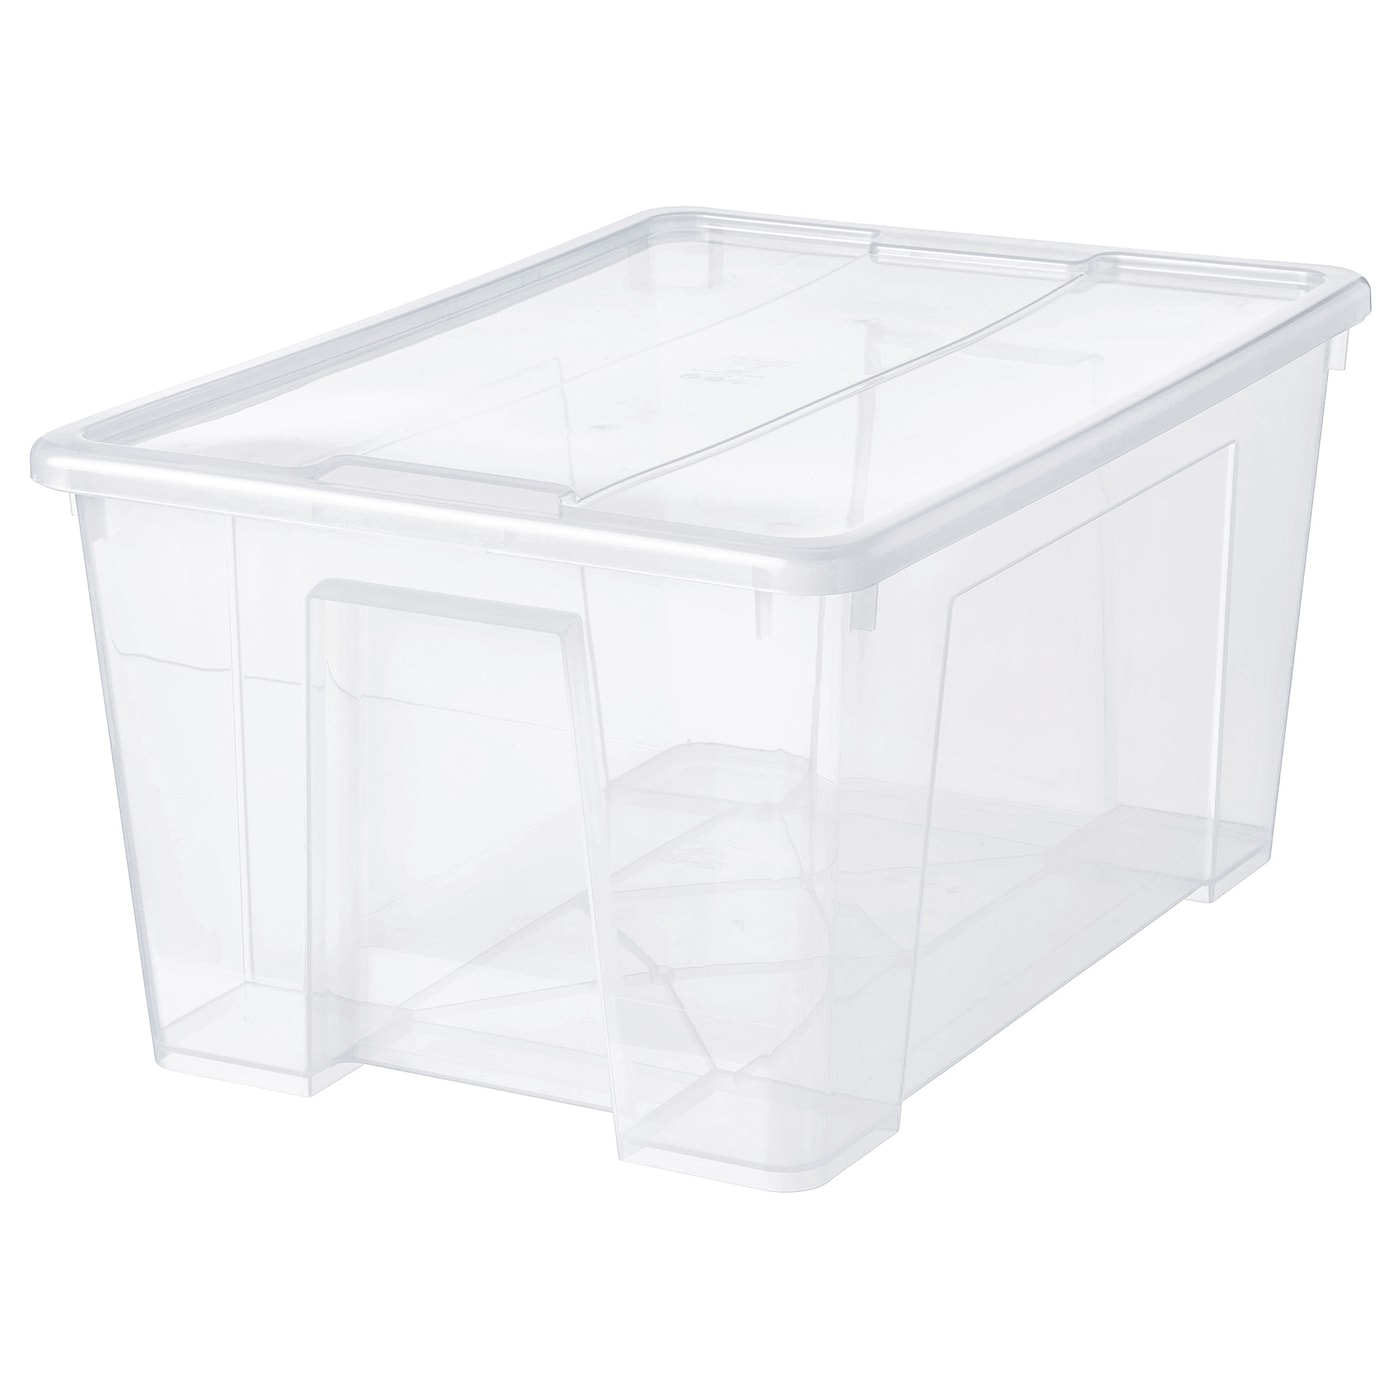 SAMLA САМЛА Контейнер с крышкой, прозрачный, 57x39x28 см/45 л IKEA контейнер для вещей с крышкой икеа самла samla 39x28x14 см 11 л прозрачный 39389132